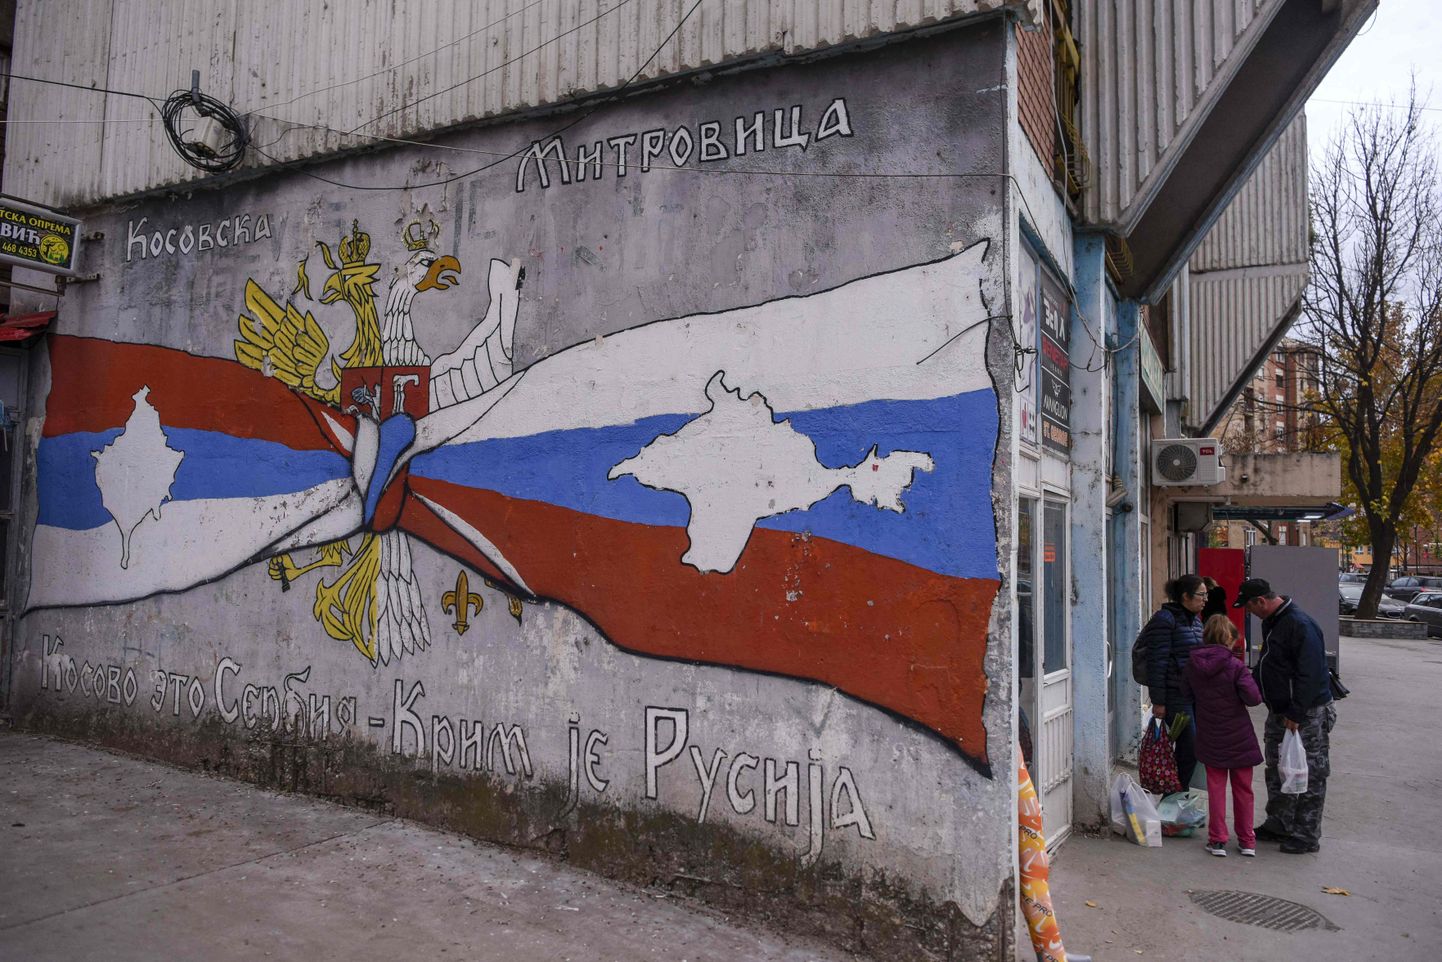 Kosovos Mitrovicë linnas asuv vene- ja serbiameelne seinajoonistus. Serbia on olnud üks Venemaa-sõbralikumaid riike Euroopas.